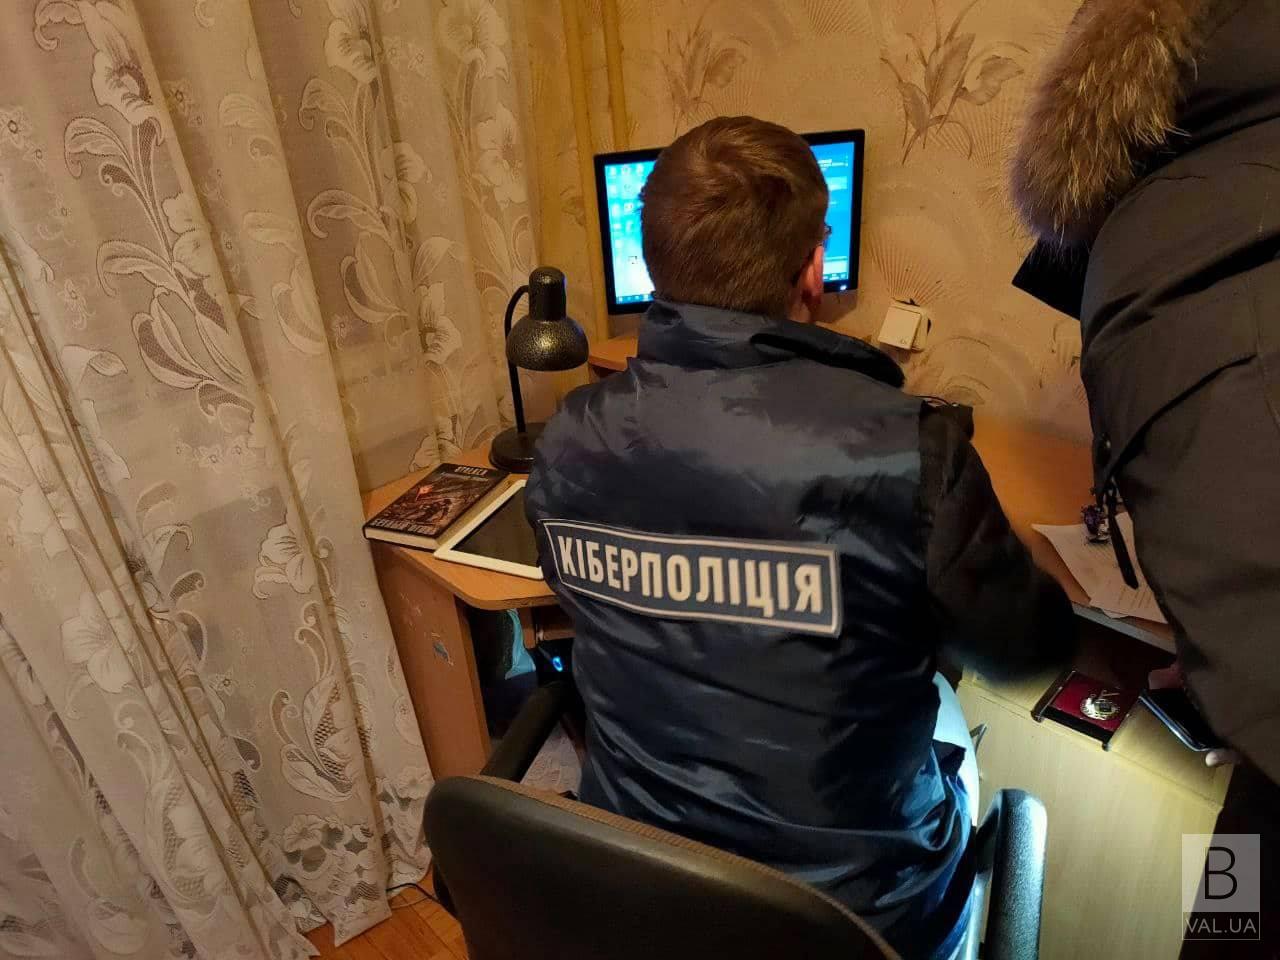  В Славутиче киберполиции обнаружила молодого человека, который похищал документы и оформлял кредиты